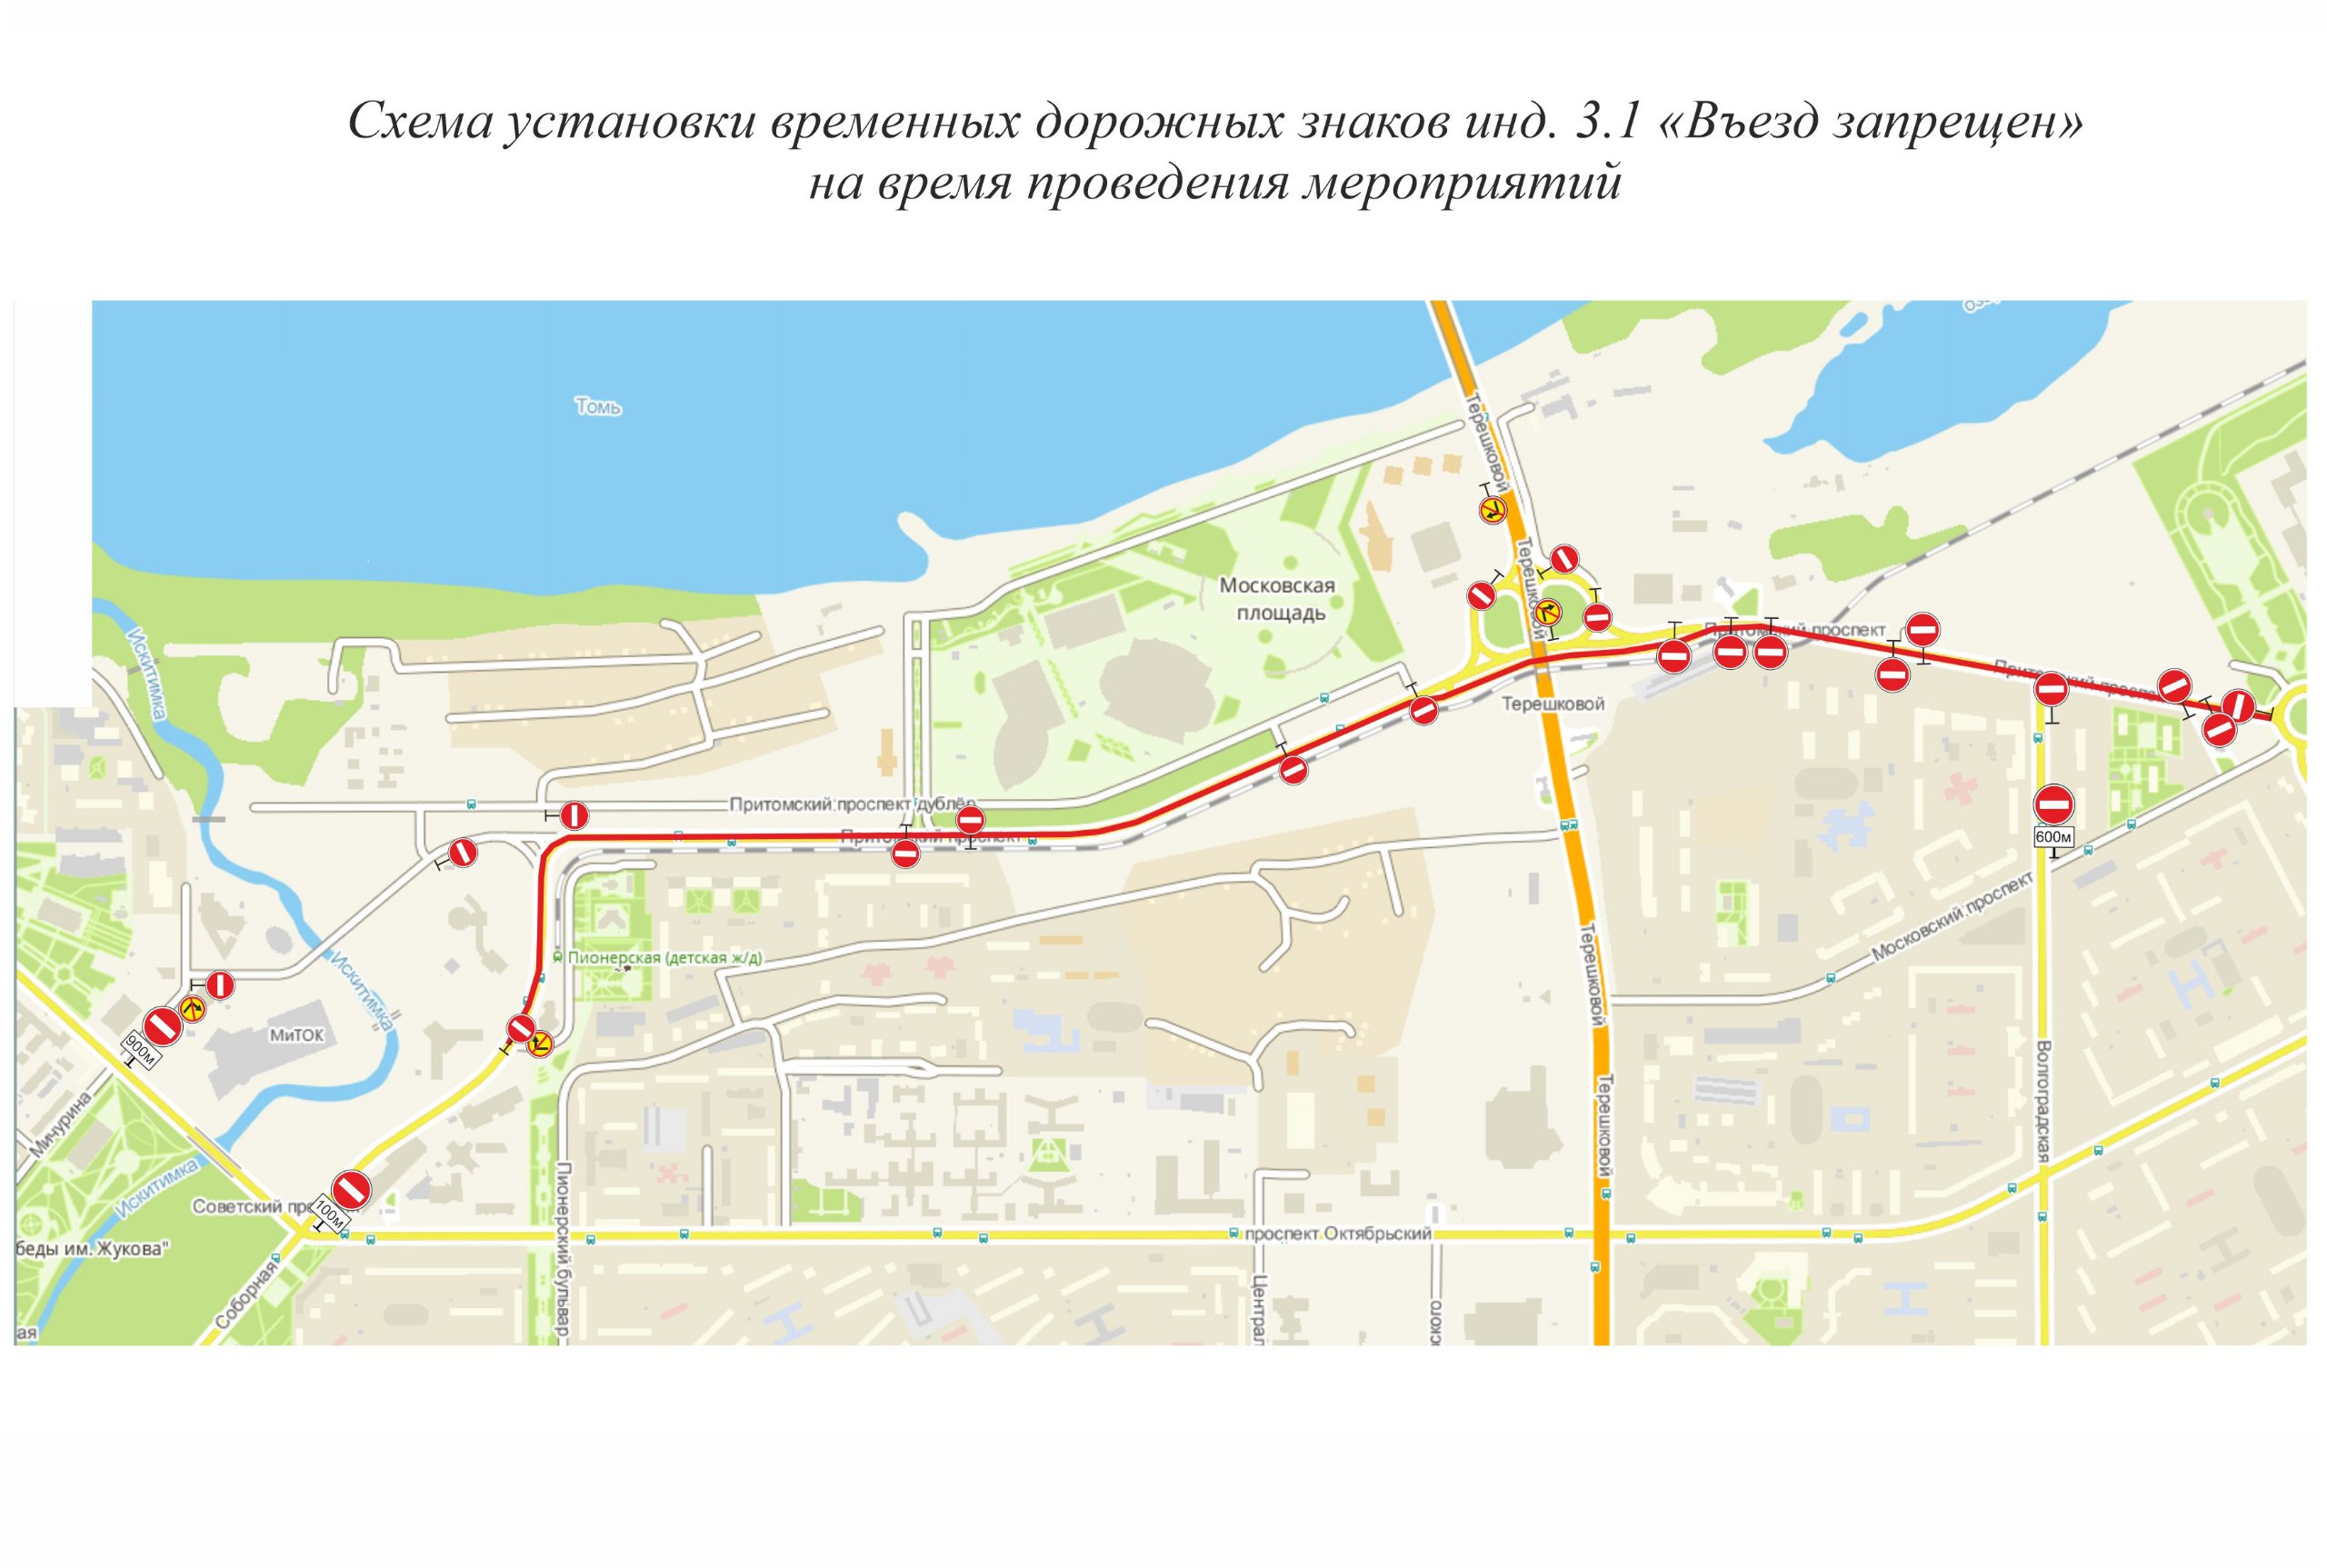 В Кемерове ограничат движение по Притомскому проспекту и отменят три автобуса 19 мая